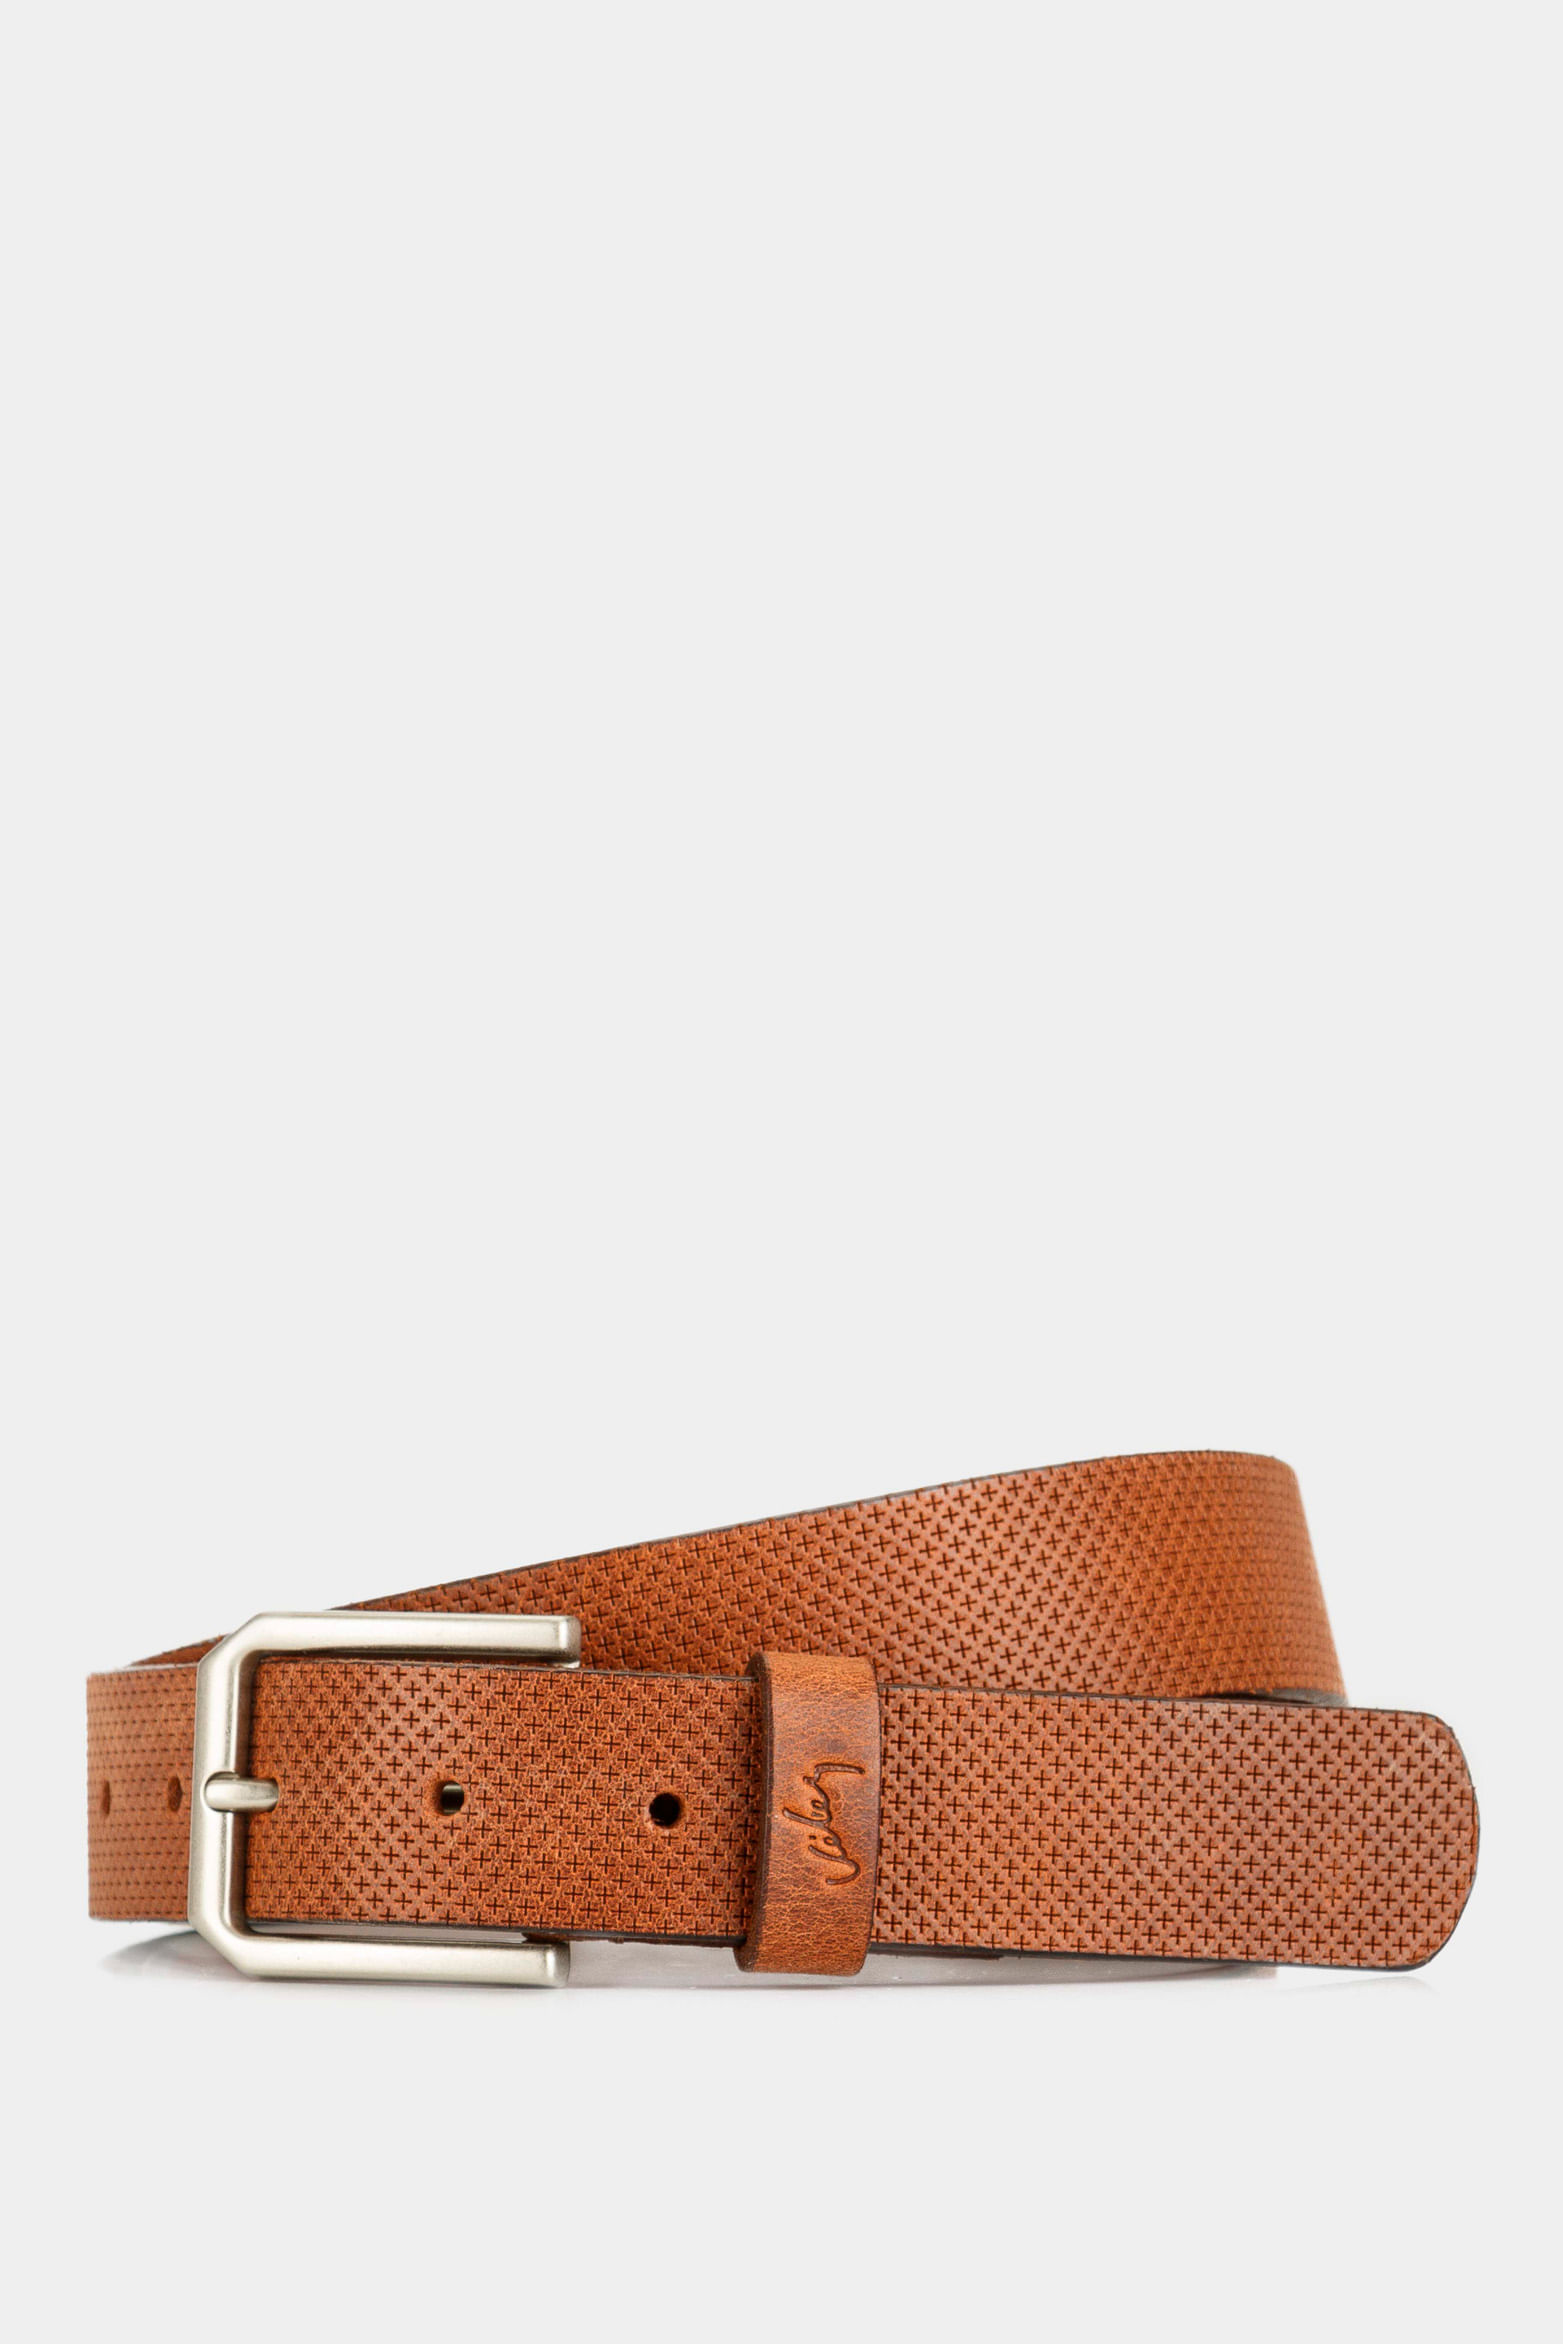 Cinturón de cuero para hombre, accesorio de marca de lujo, unisex